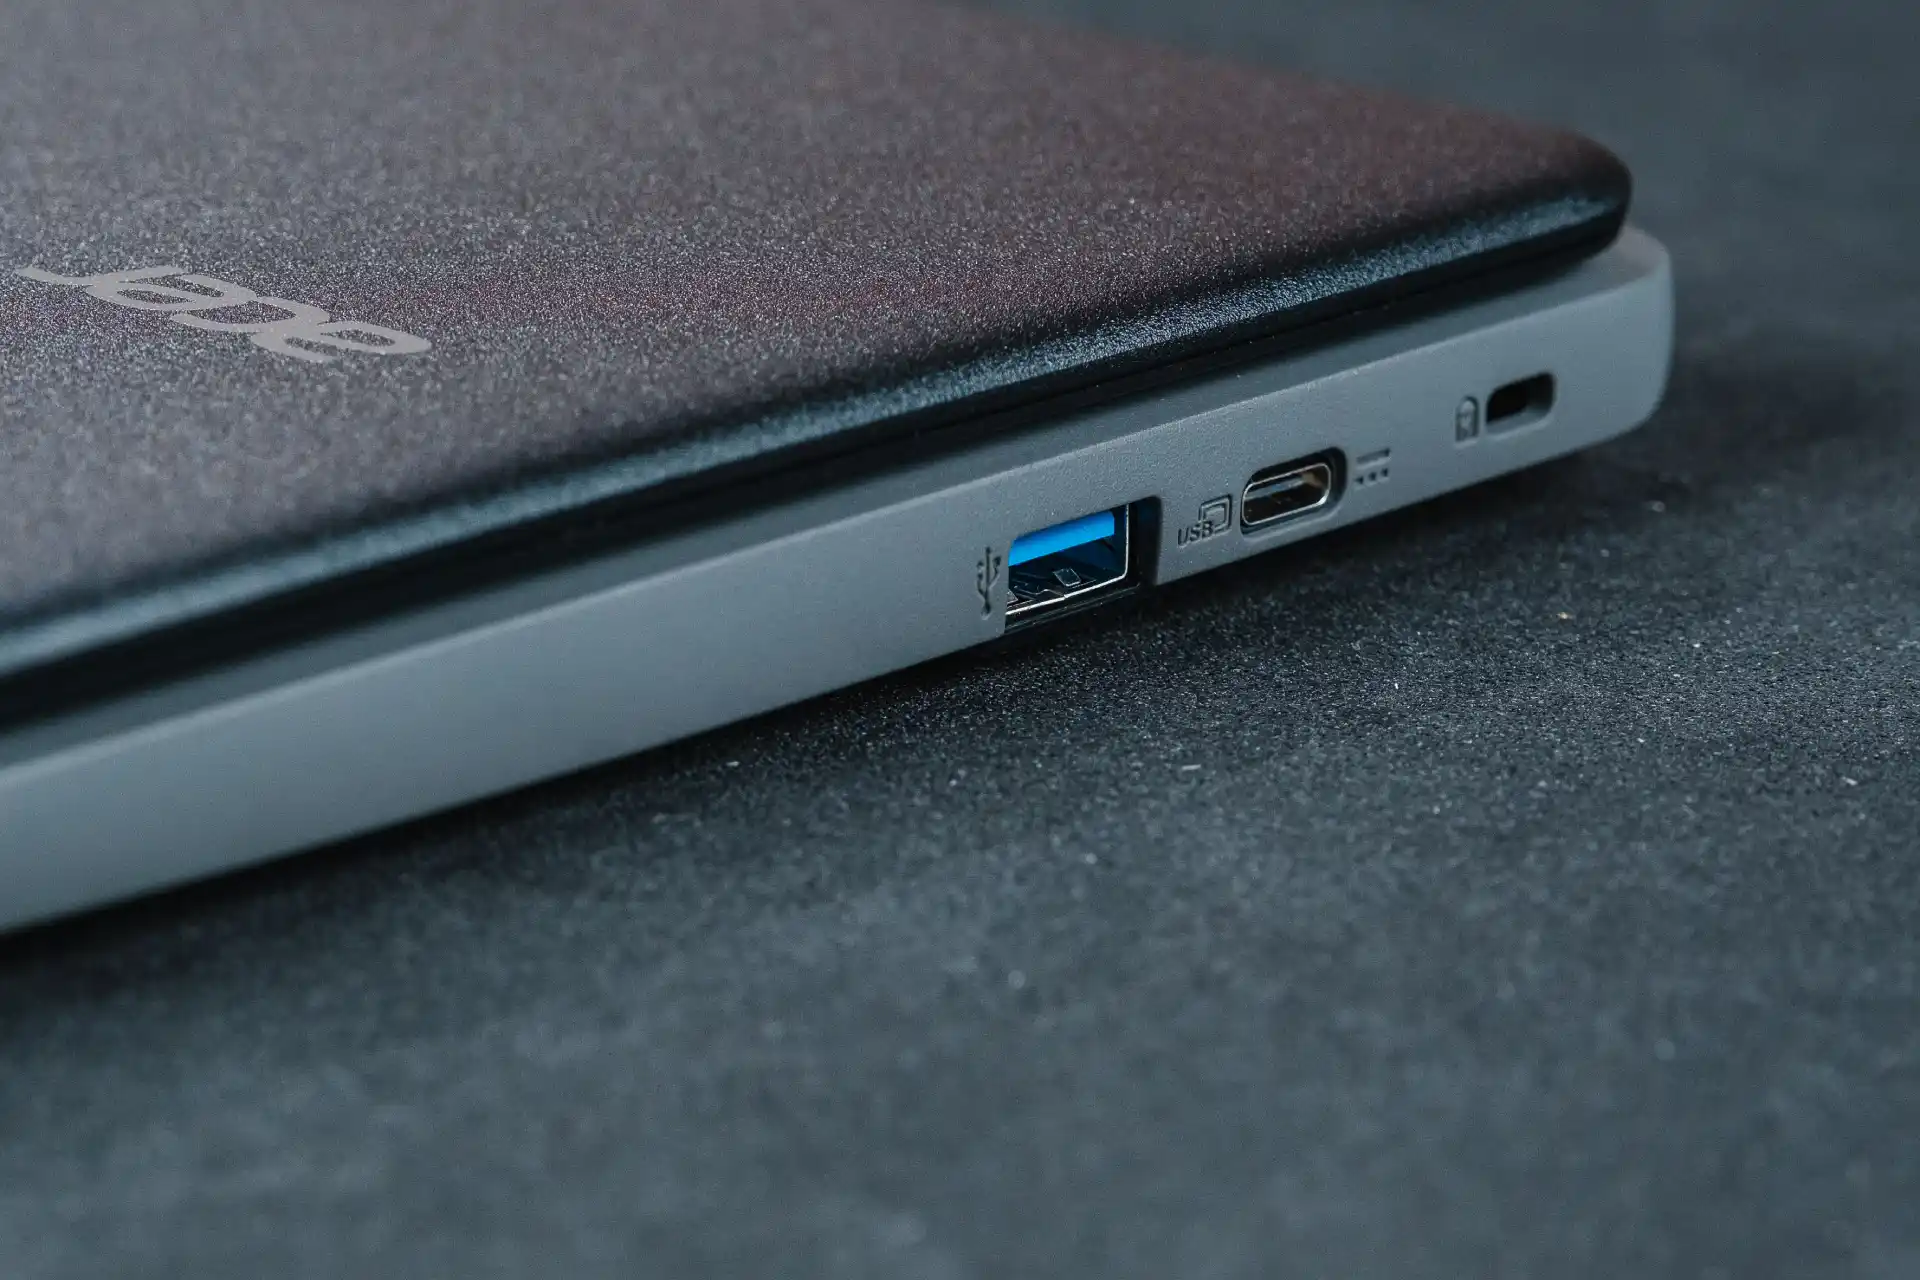 Foto da lateral do Acer Chromebook com foco nas portas USB